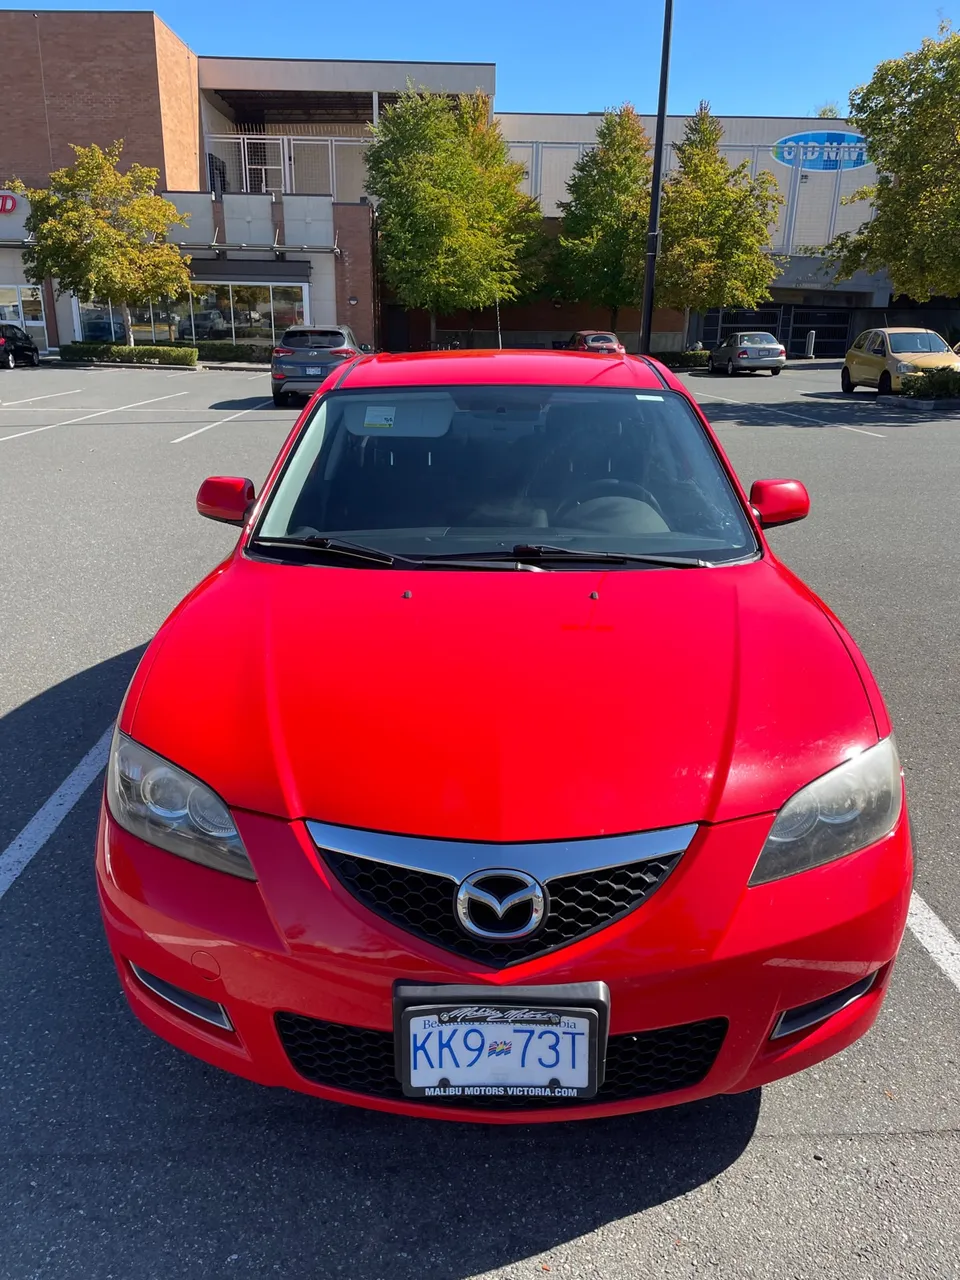 2009 Mazda 3 - $6000